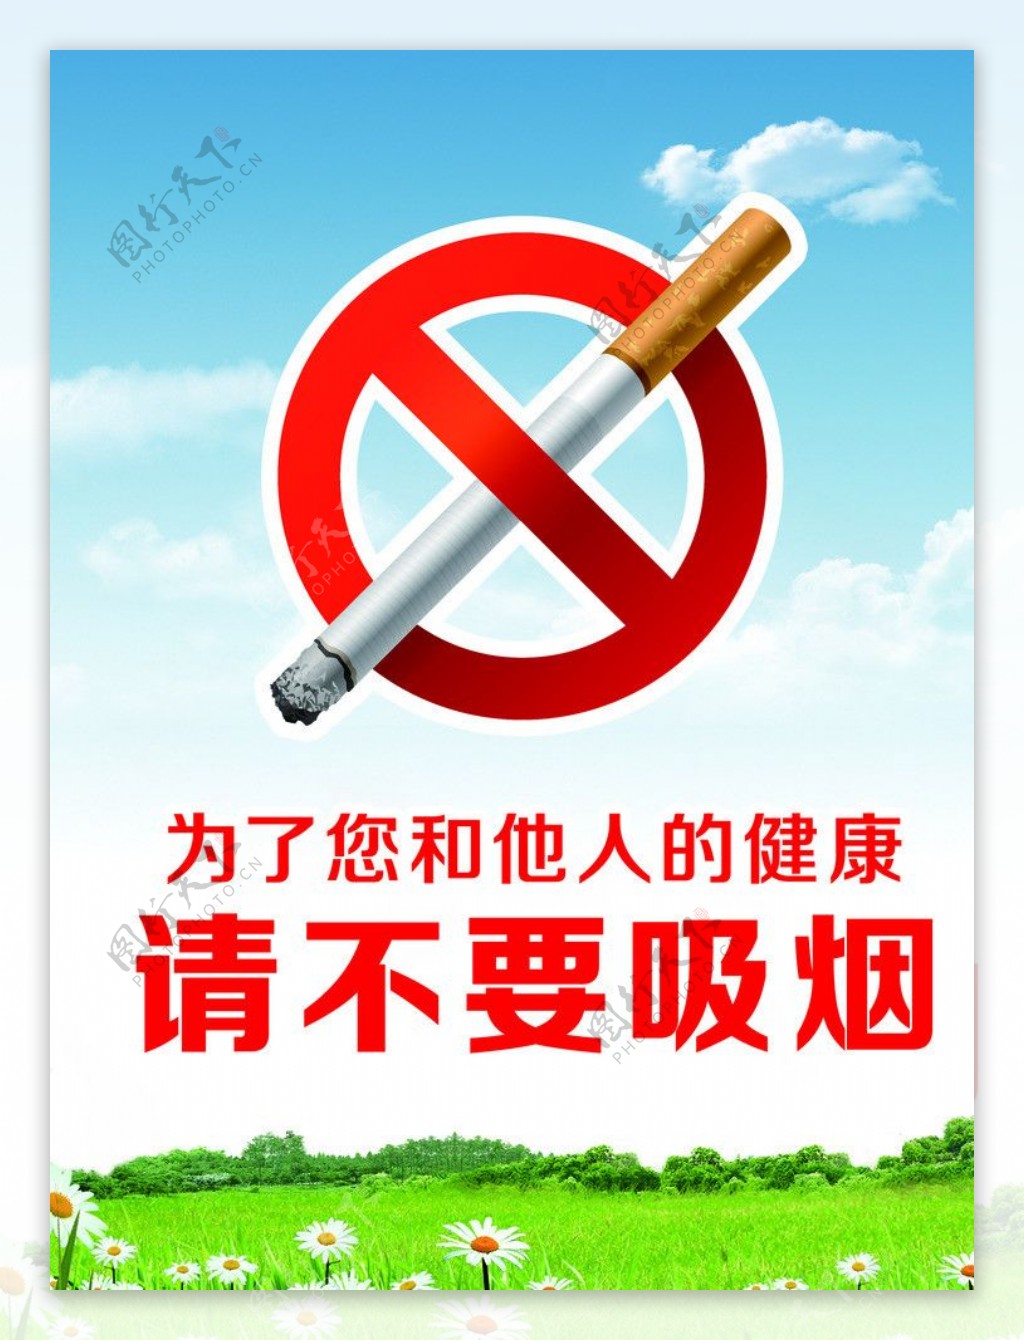 禁止吸烟展板图片